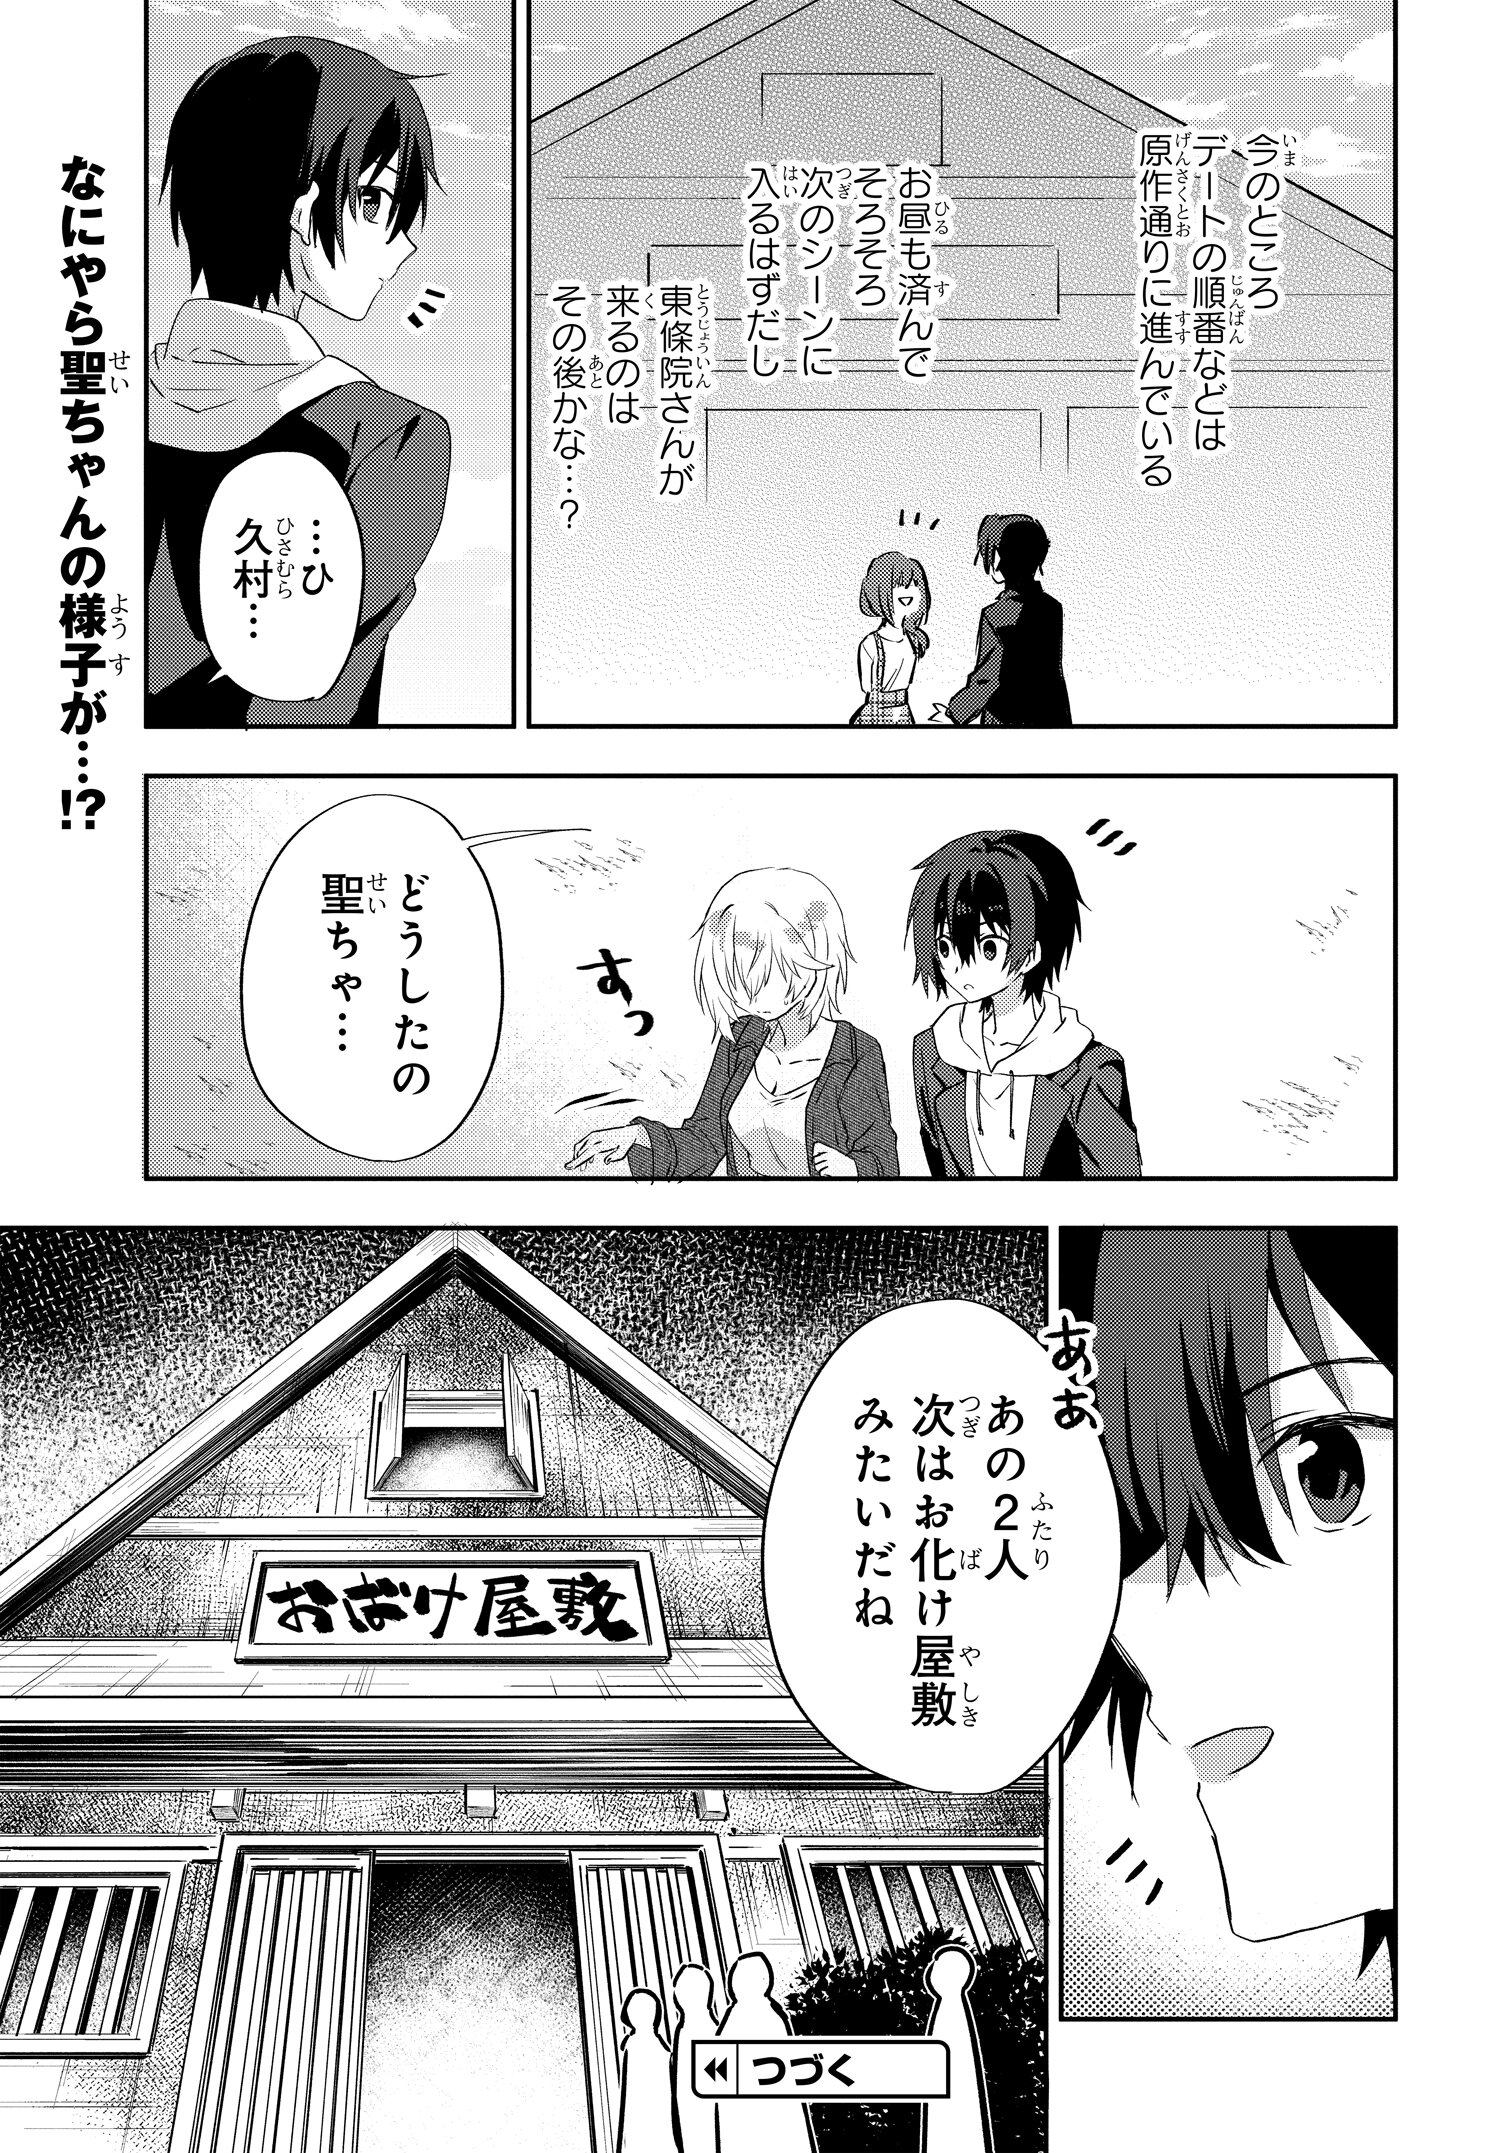 Romcom Manga ni Haitte Shimatta no de, Oshi no Make Heroine wo Zenryoku de Shiawase ni suru - Chapter 7.1 - Page 11